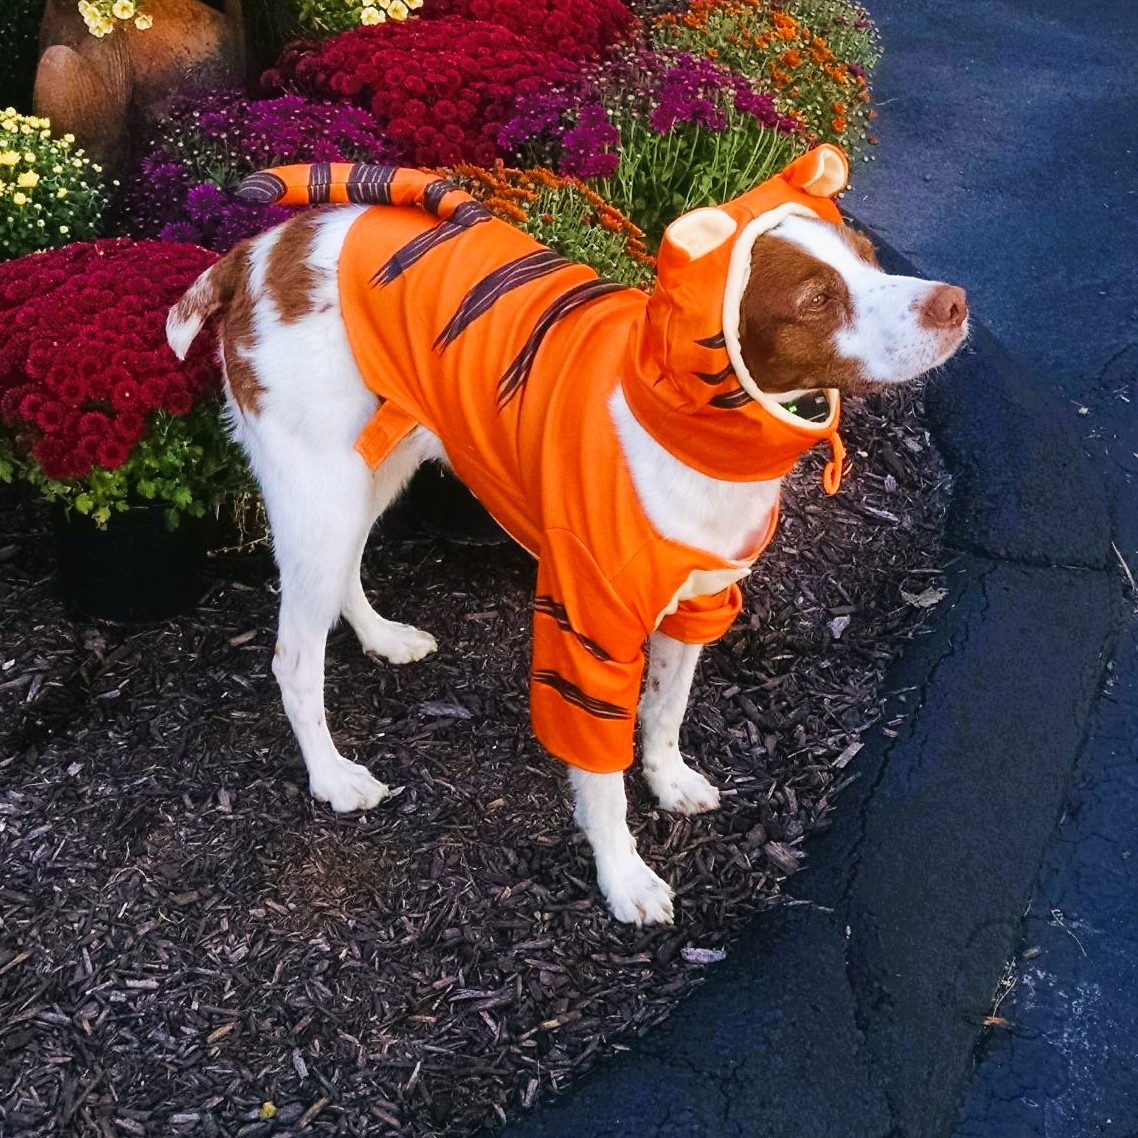 Disney Dog Tigger costume